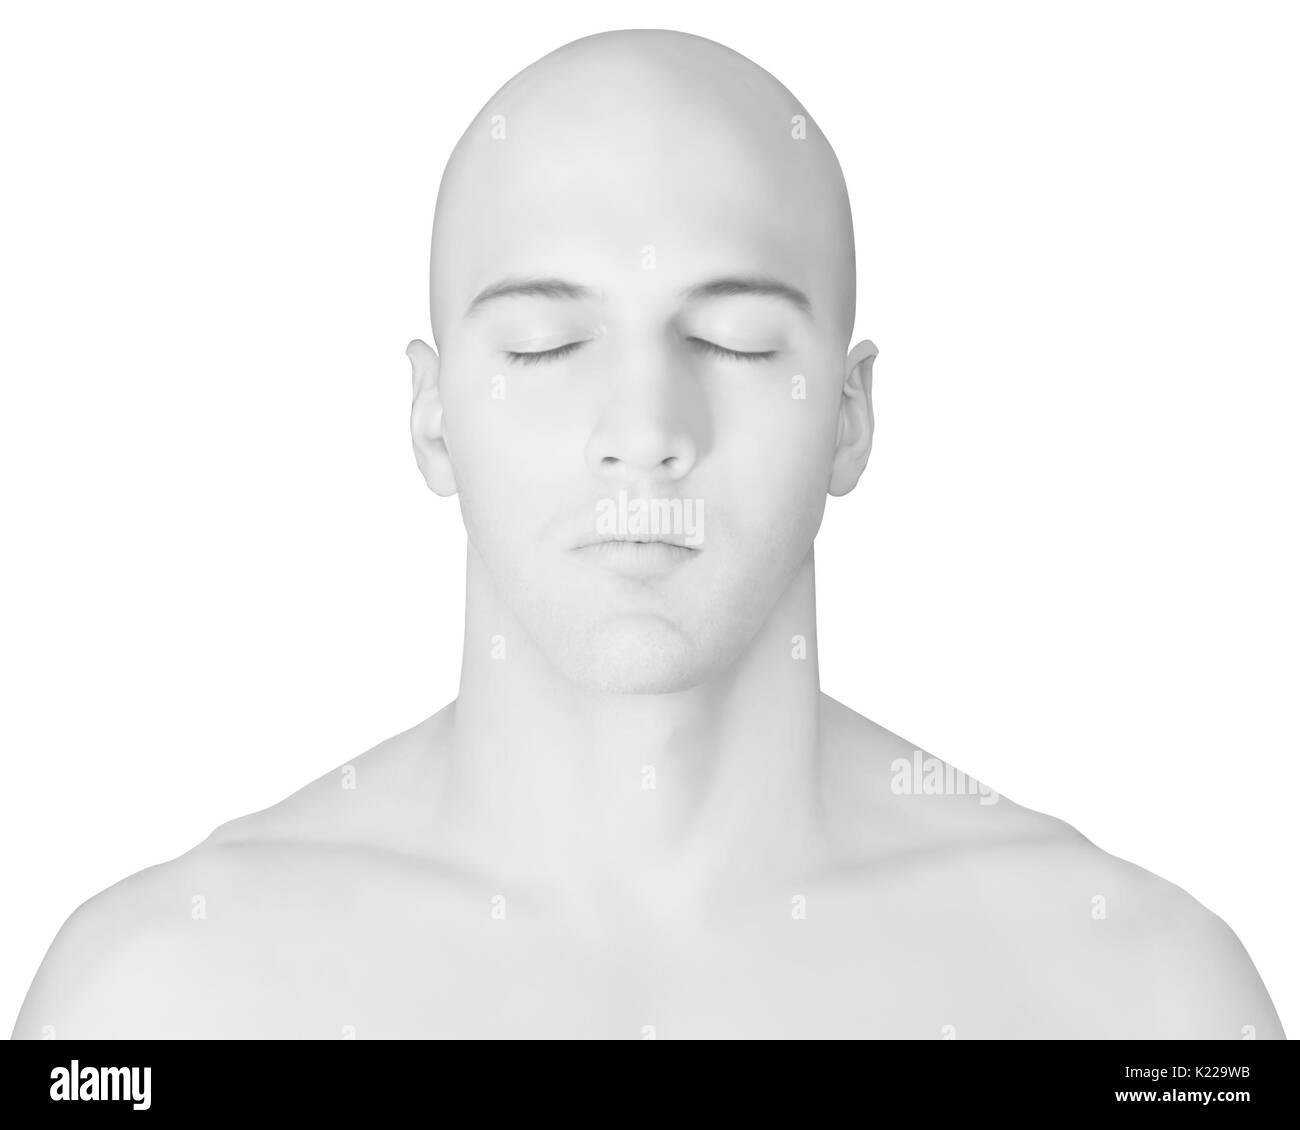 Morphology of a man Banque d'images noir et blanc - Alamy